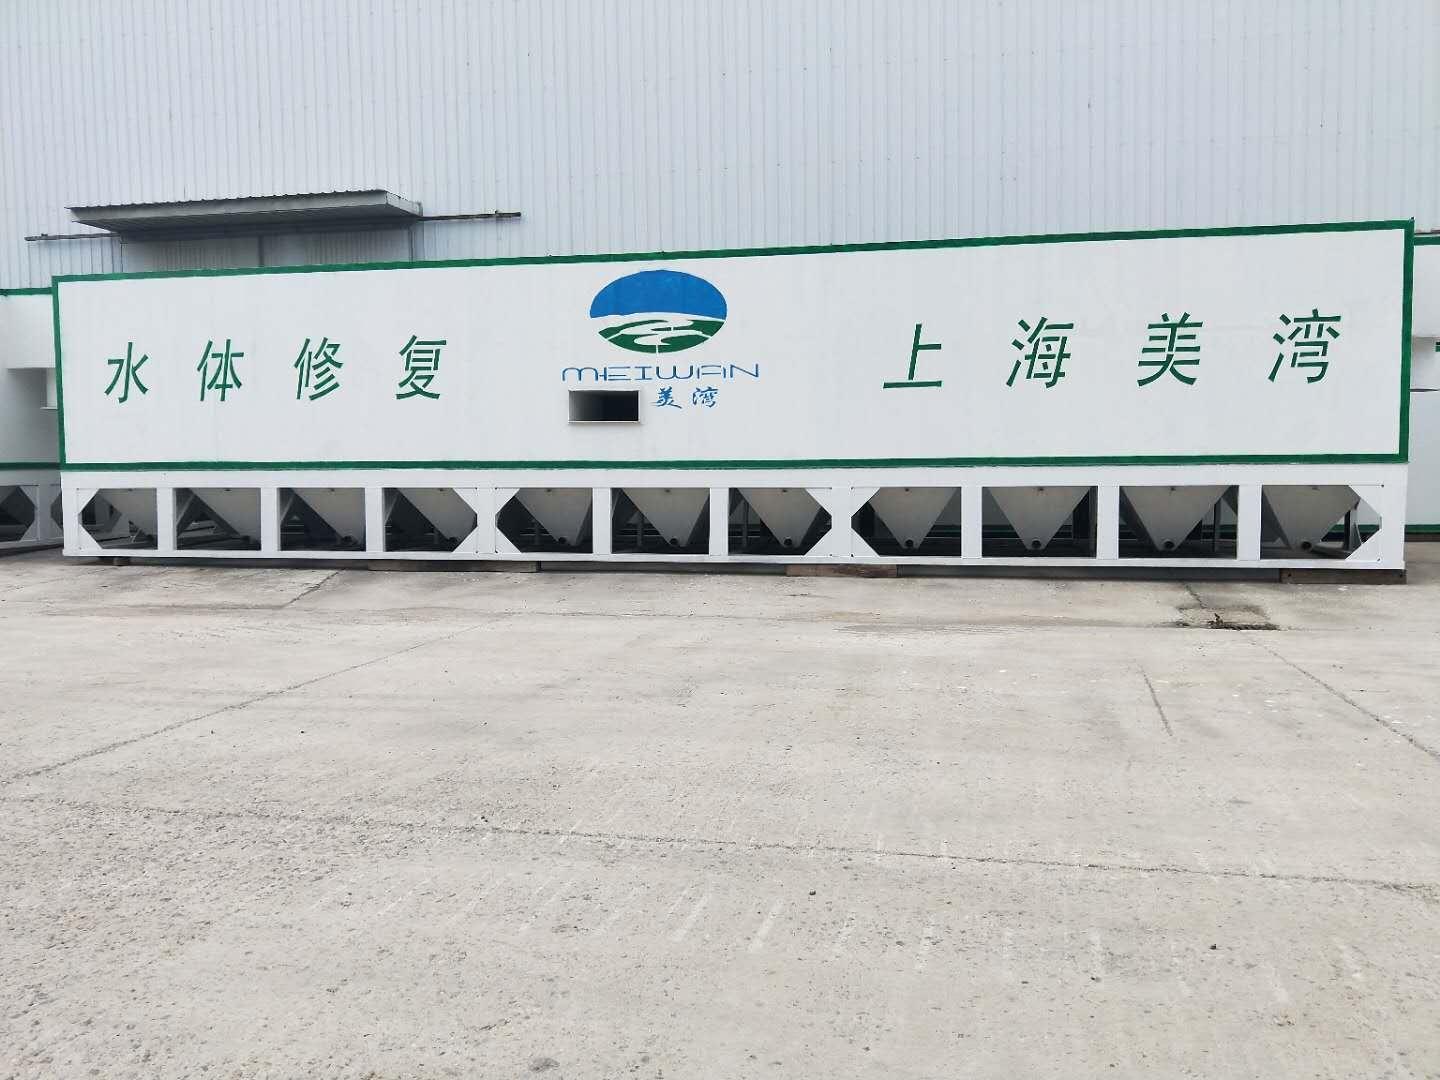 三亚磁加载净化技术制造商 上海美湾水务有限公司